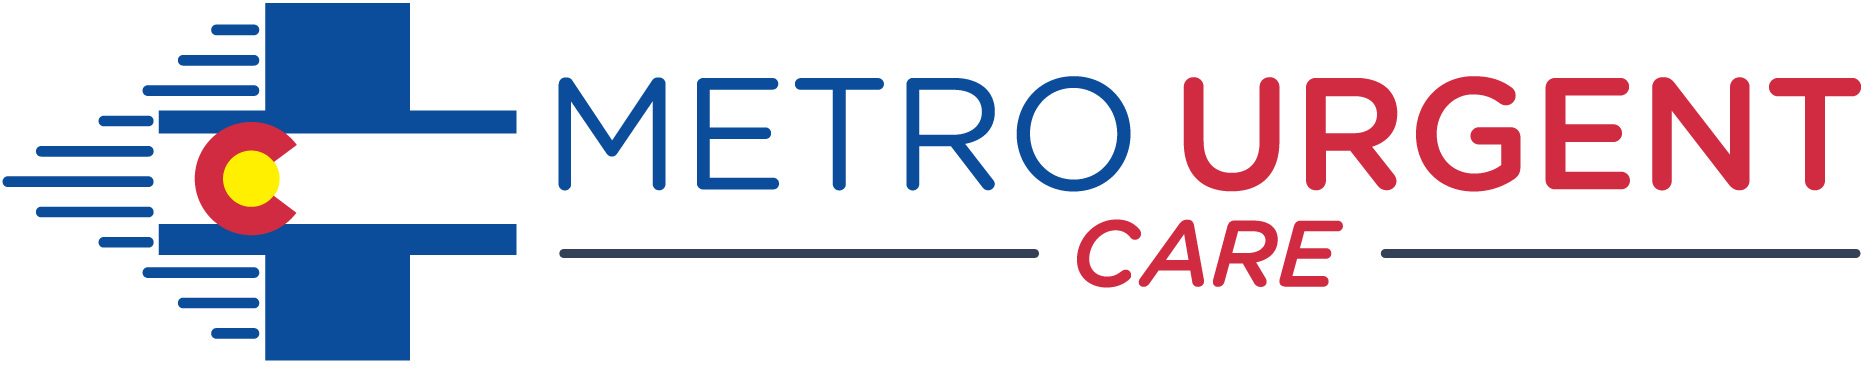 Metro Urgent Care - West Colfax Logo